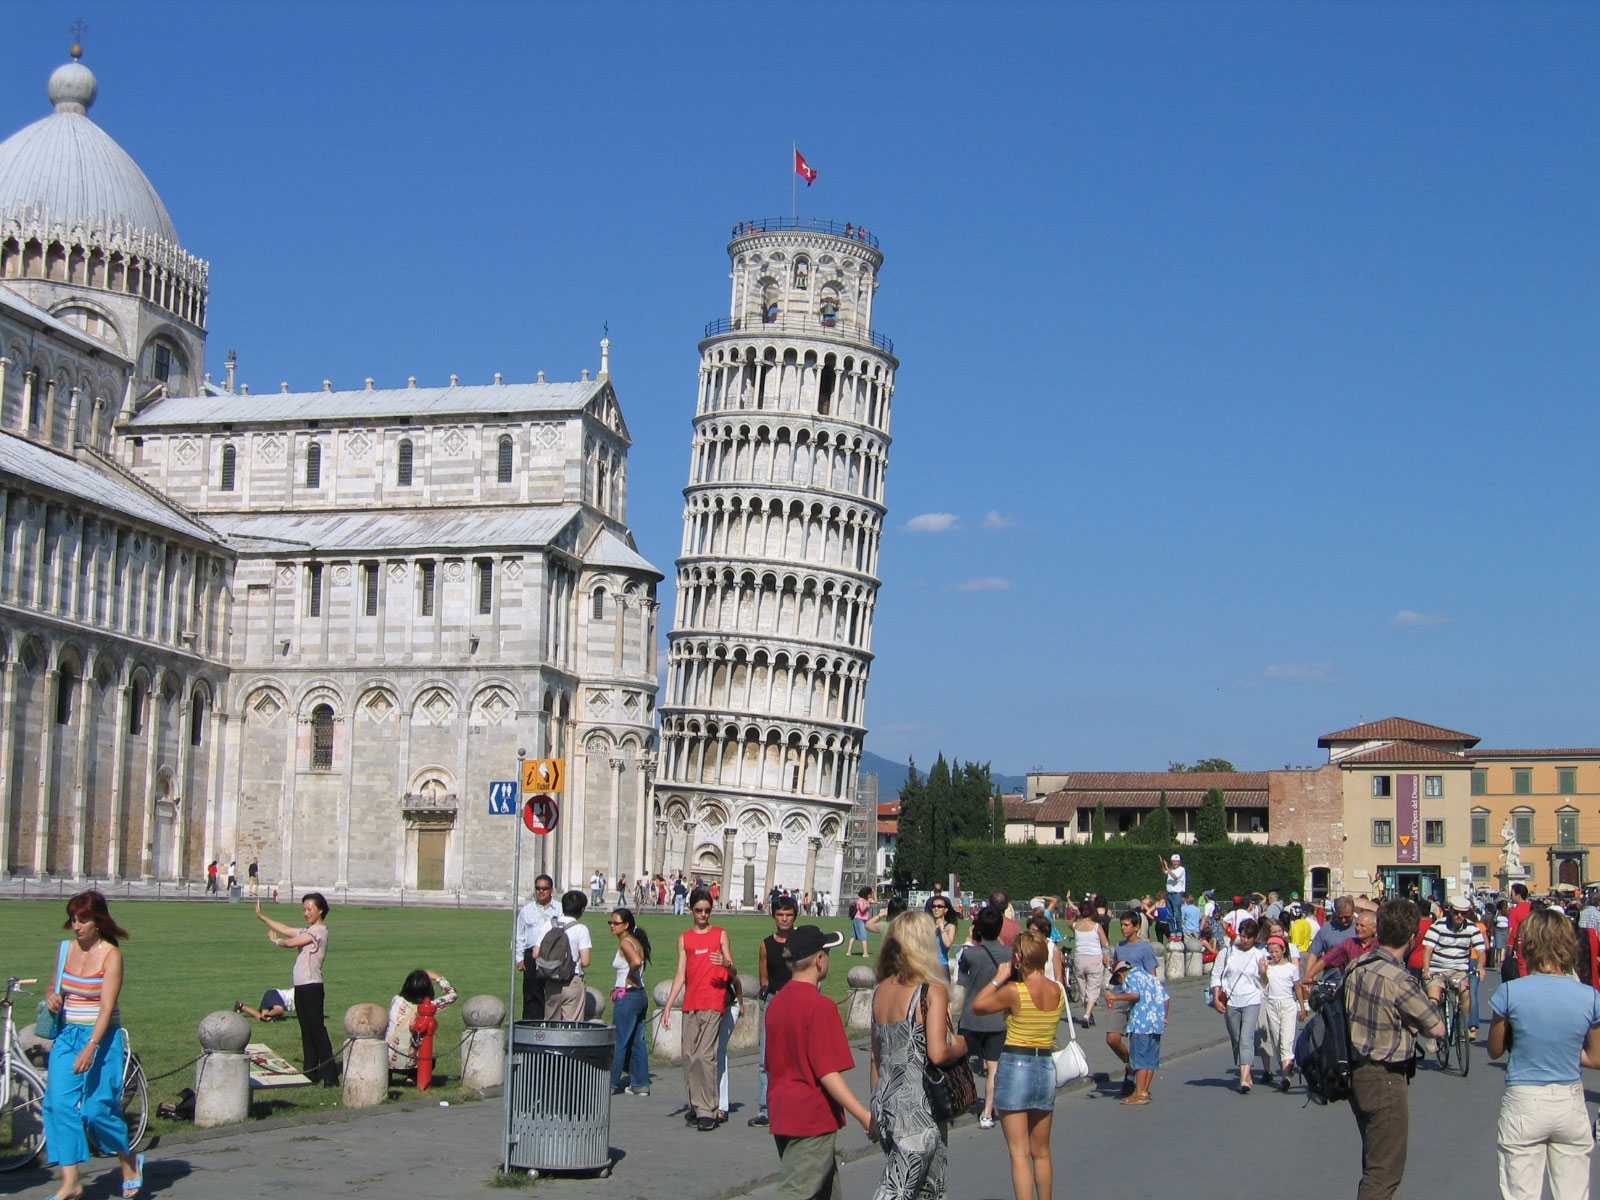 Достопримечательности пизы, италия: фото и описание, что посмотреть обязательно, интересные факты и отзывы туристов